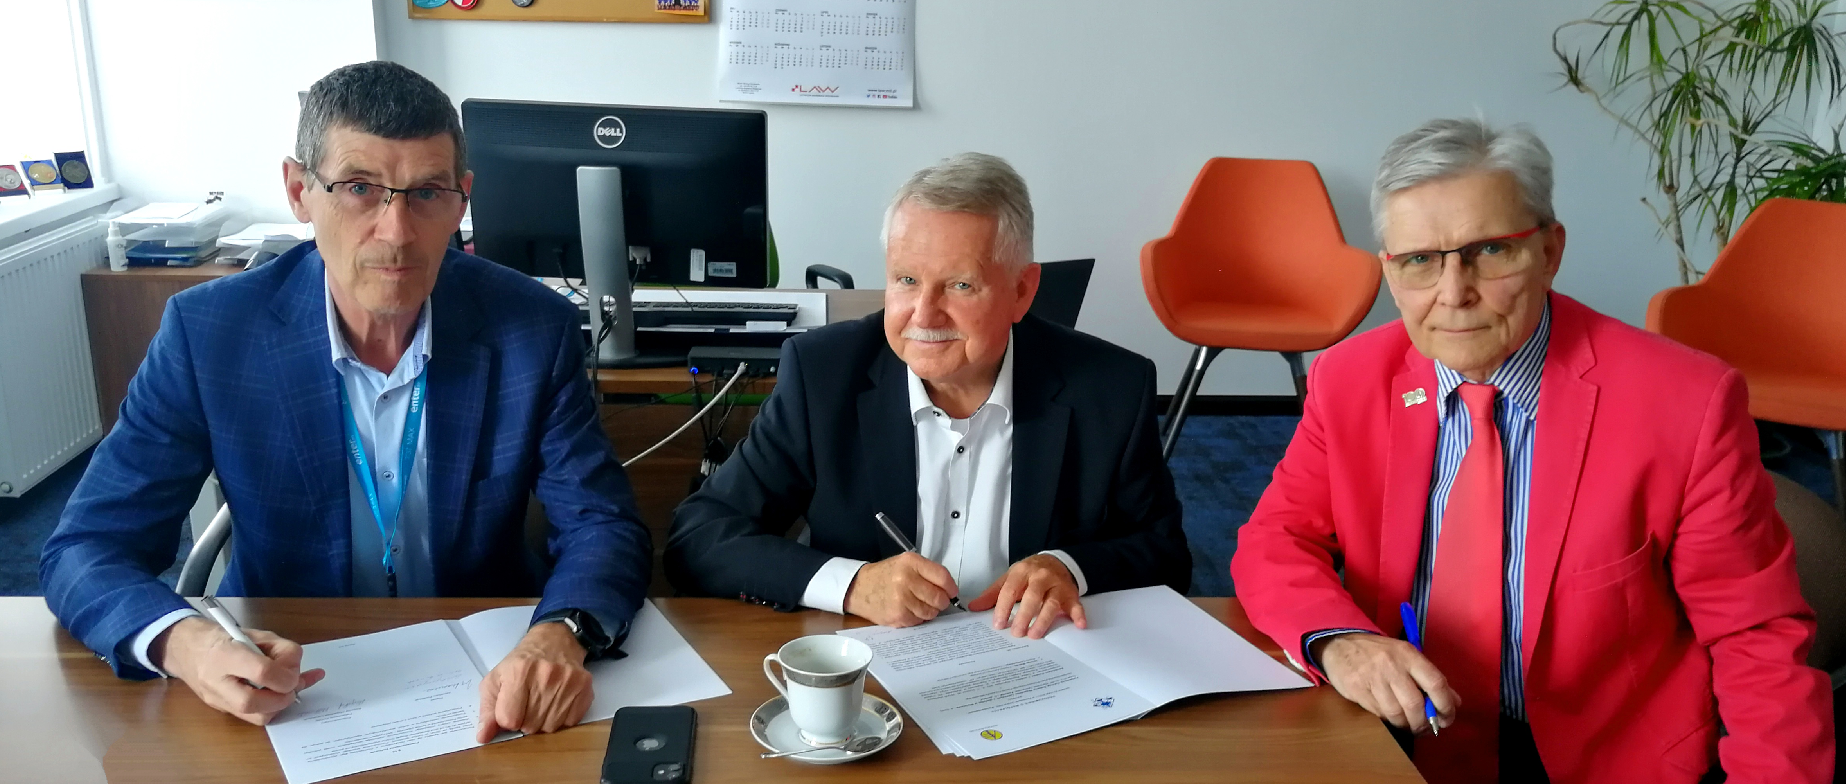 Podpisanie porozumienia o współpracy z Aeroklubem Polskim